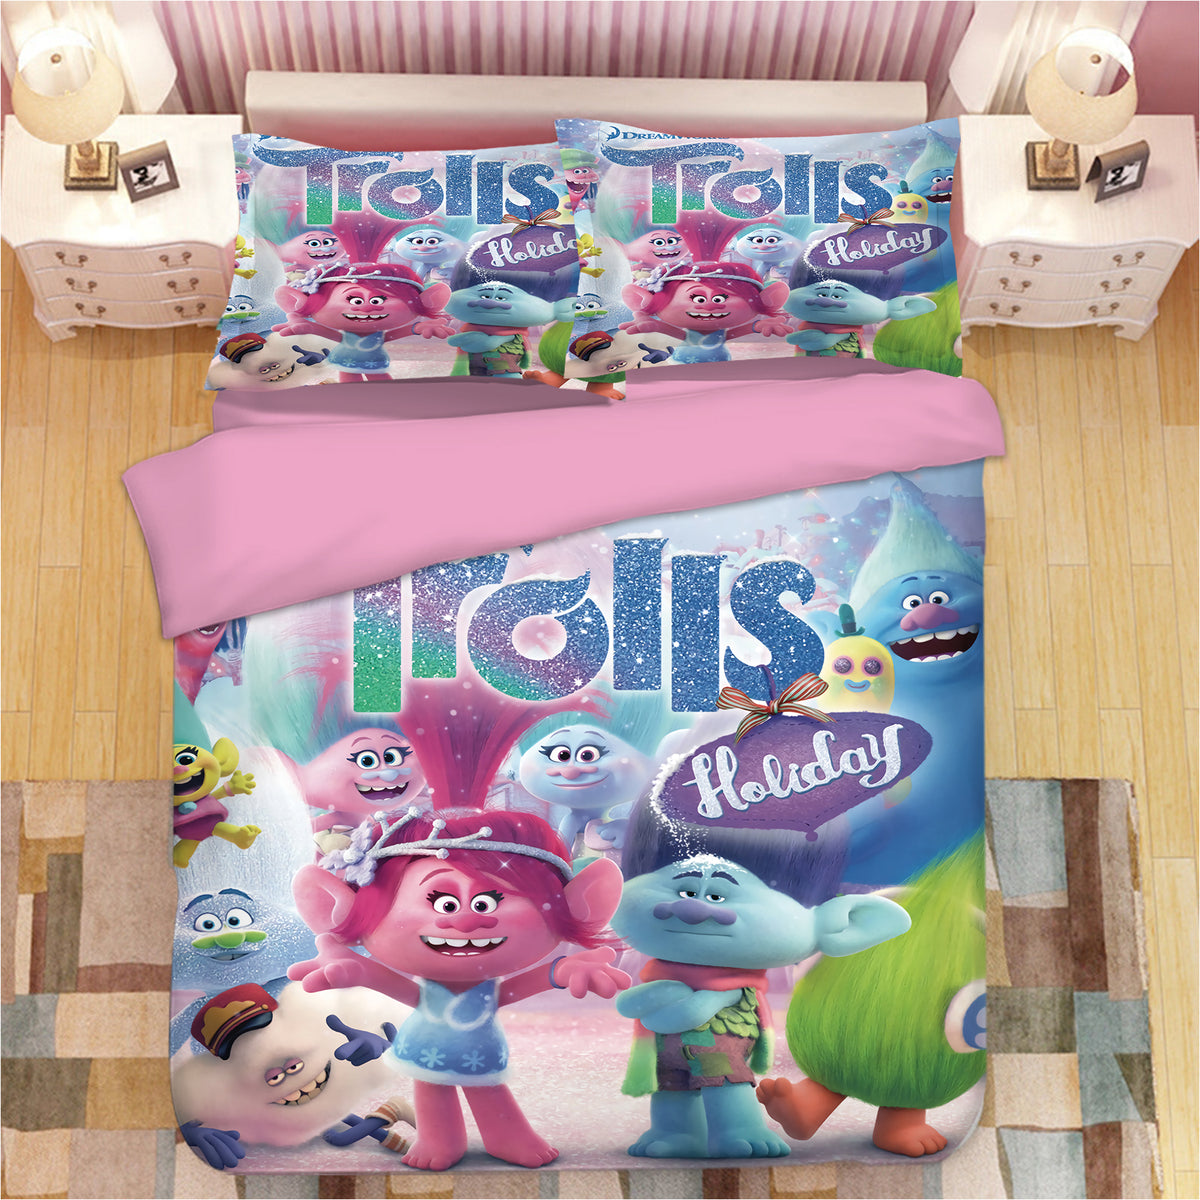 Trolls Poppy #16 Duvet Cover Quilt Cover Pillowcase Bedding Set Bed Linen Home Bedroom Decor